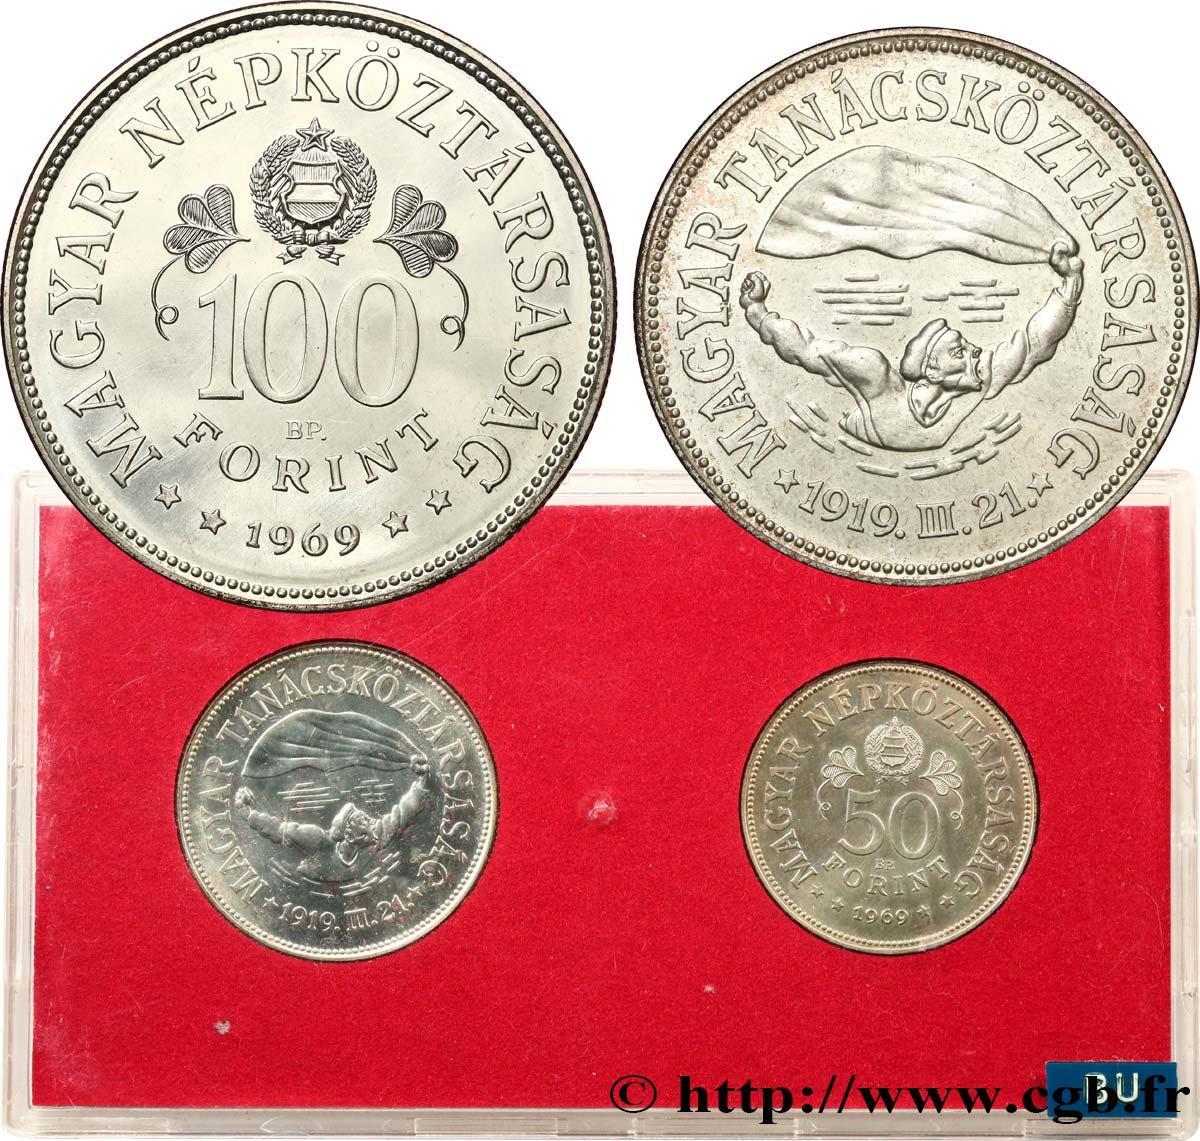 HUNGRíA Série FDC - 2 monnaies - 50e anniversaire des soviets du 31 mars 1919 1969 Budapest FDC 